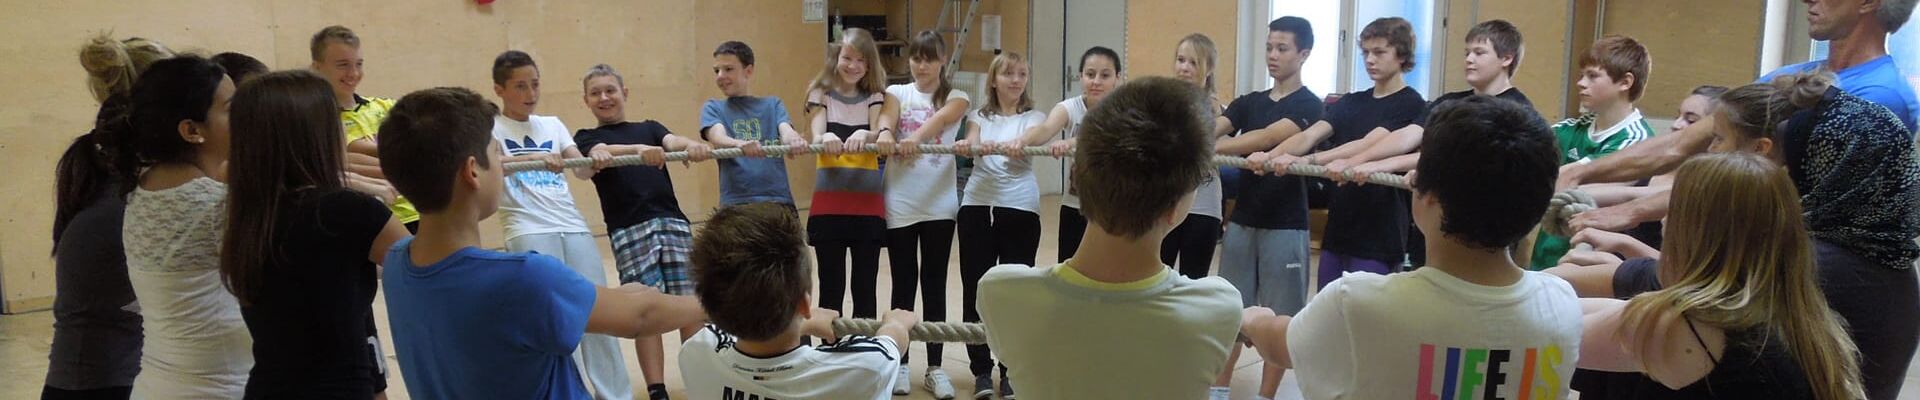 Jugendliche beim Teamspiel Balance mit dem Tau